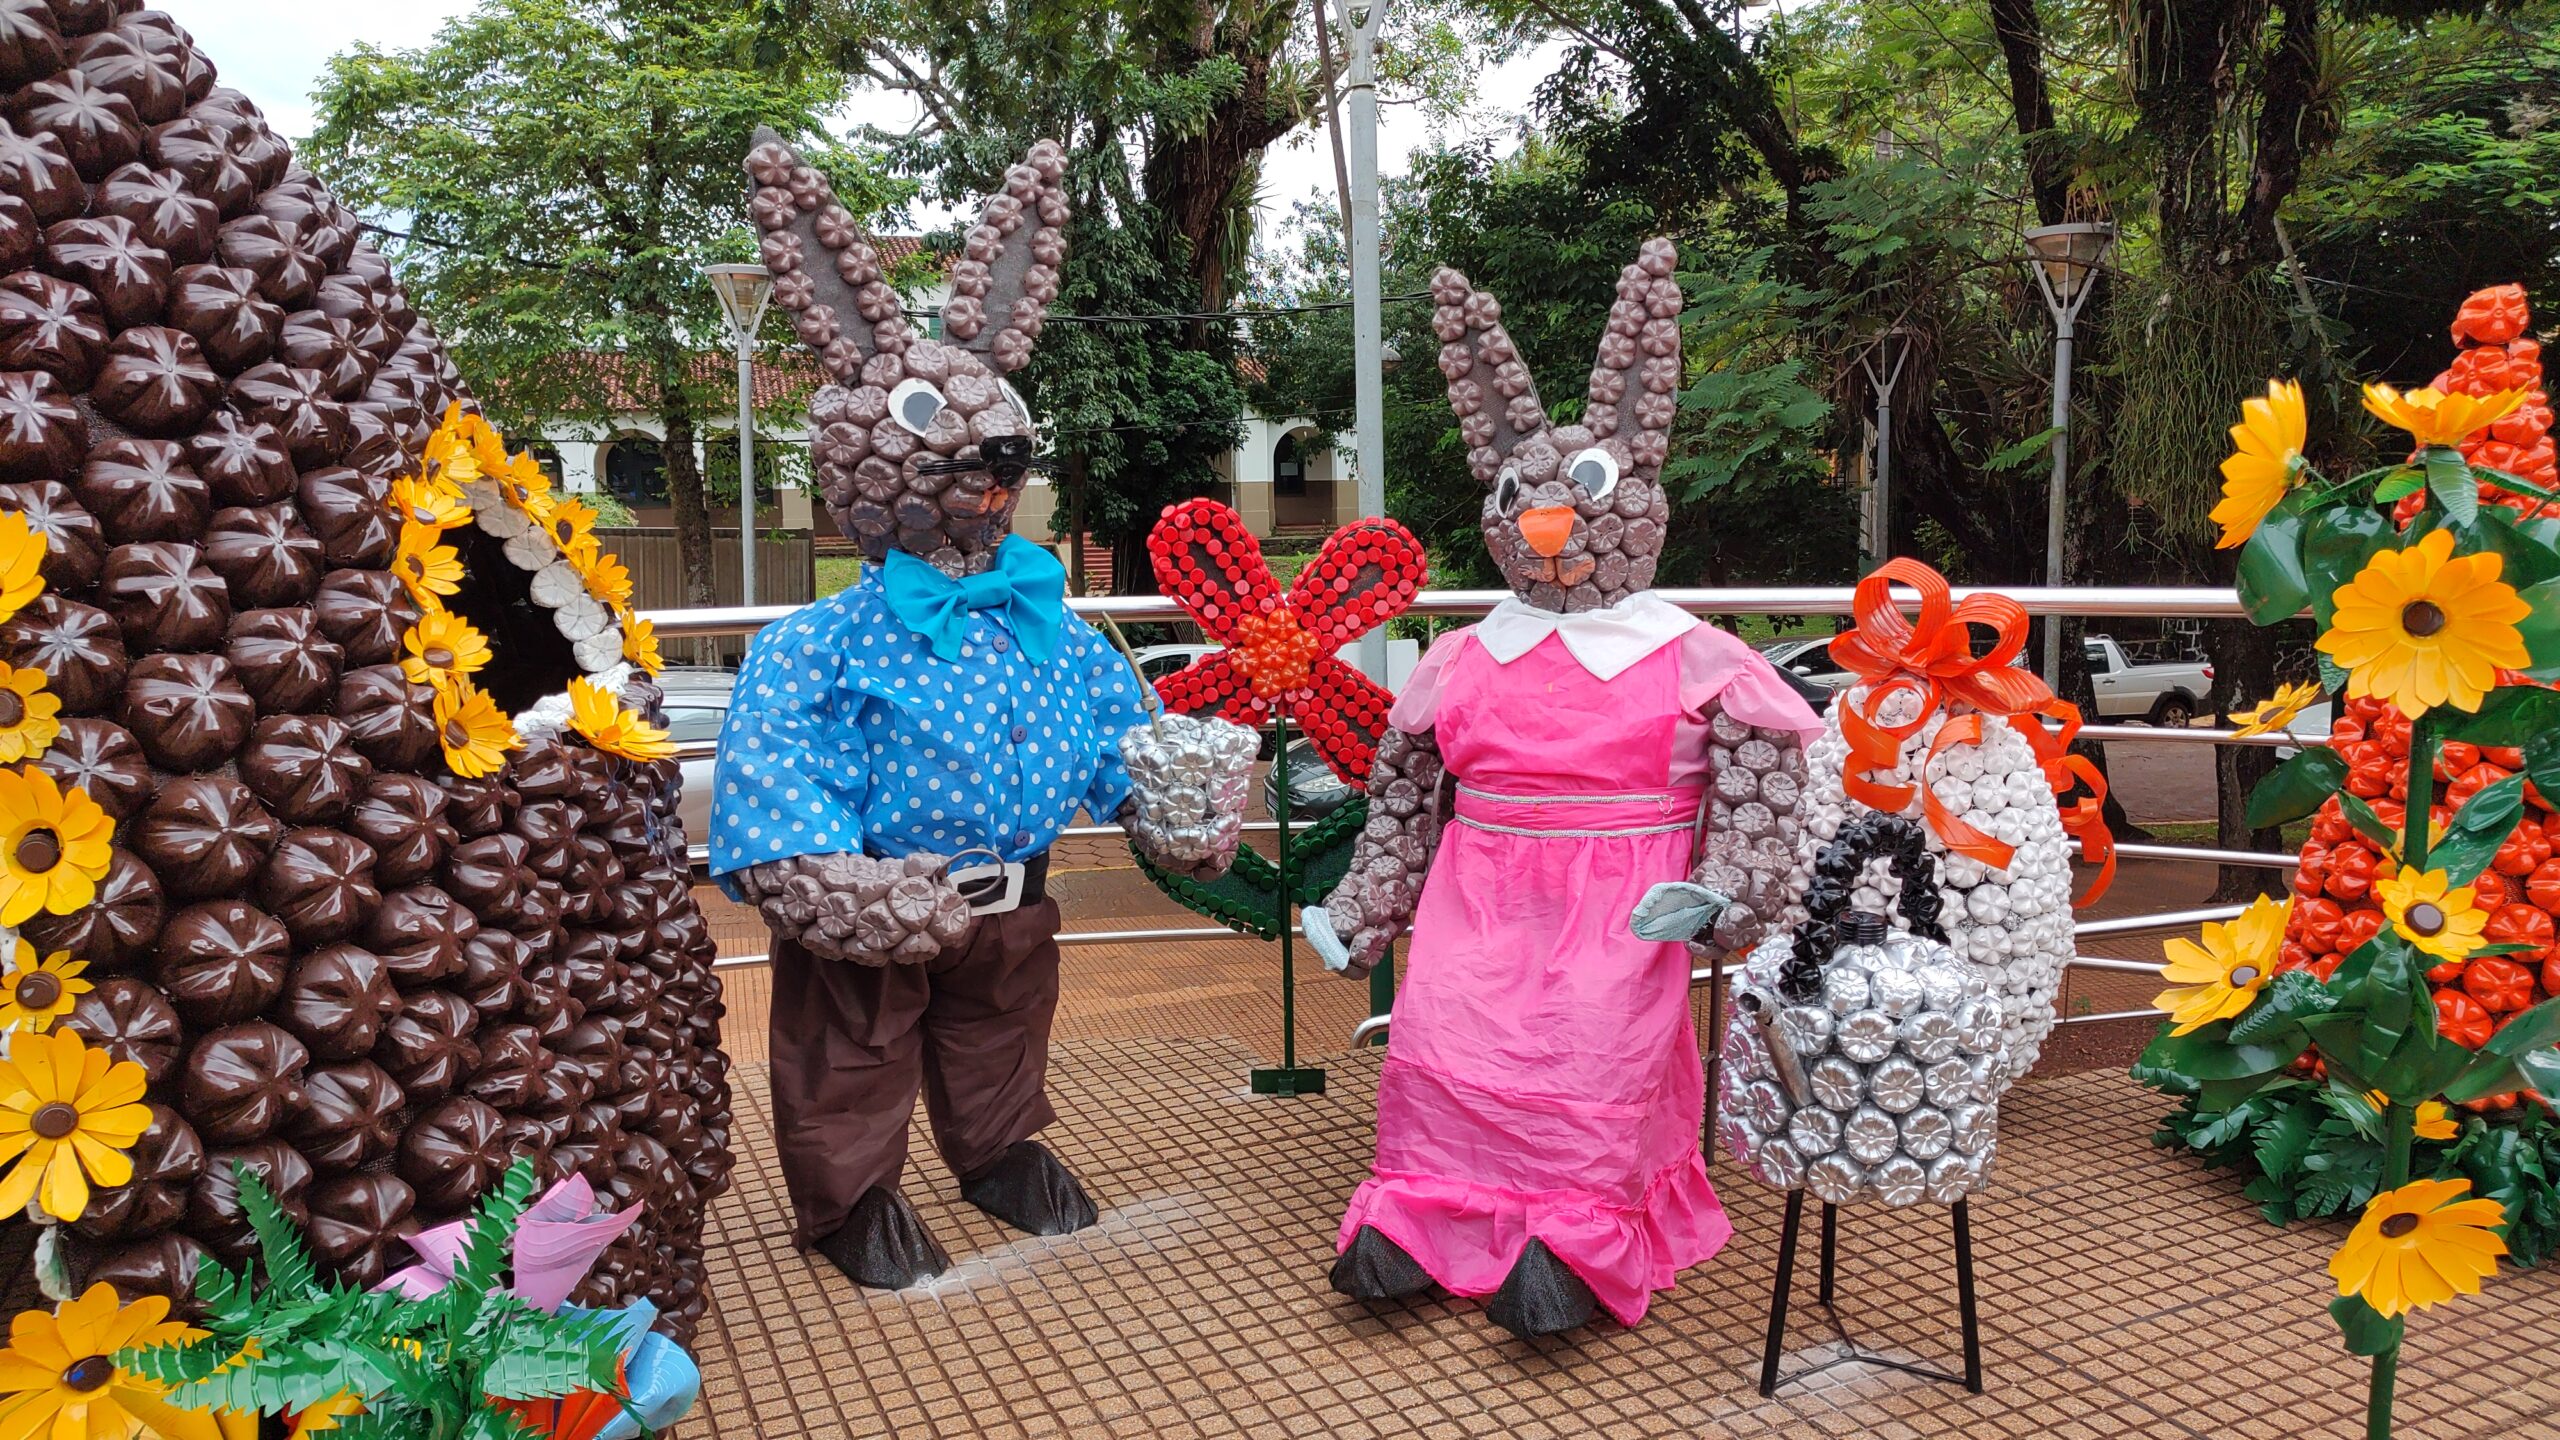 Semana Santa: Ferias, shows en vivo y el tradicional Viacrucis en la plaza San Martin